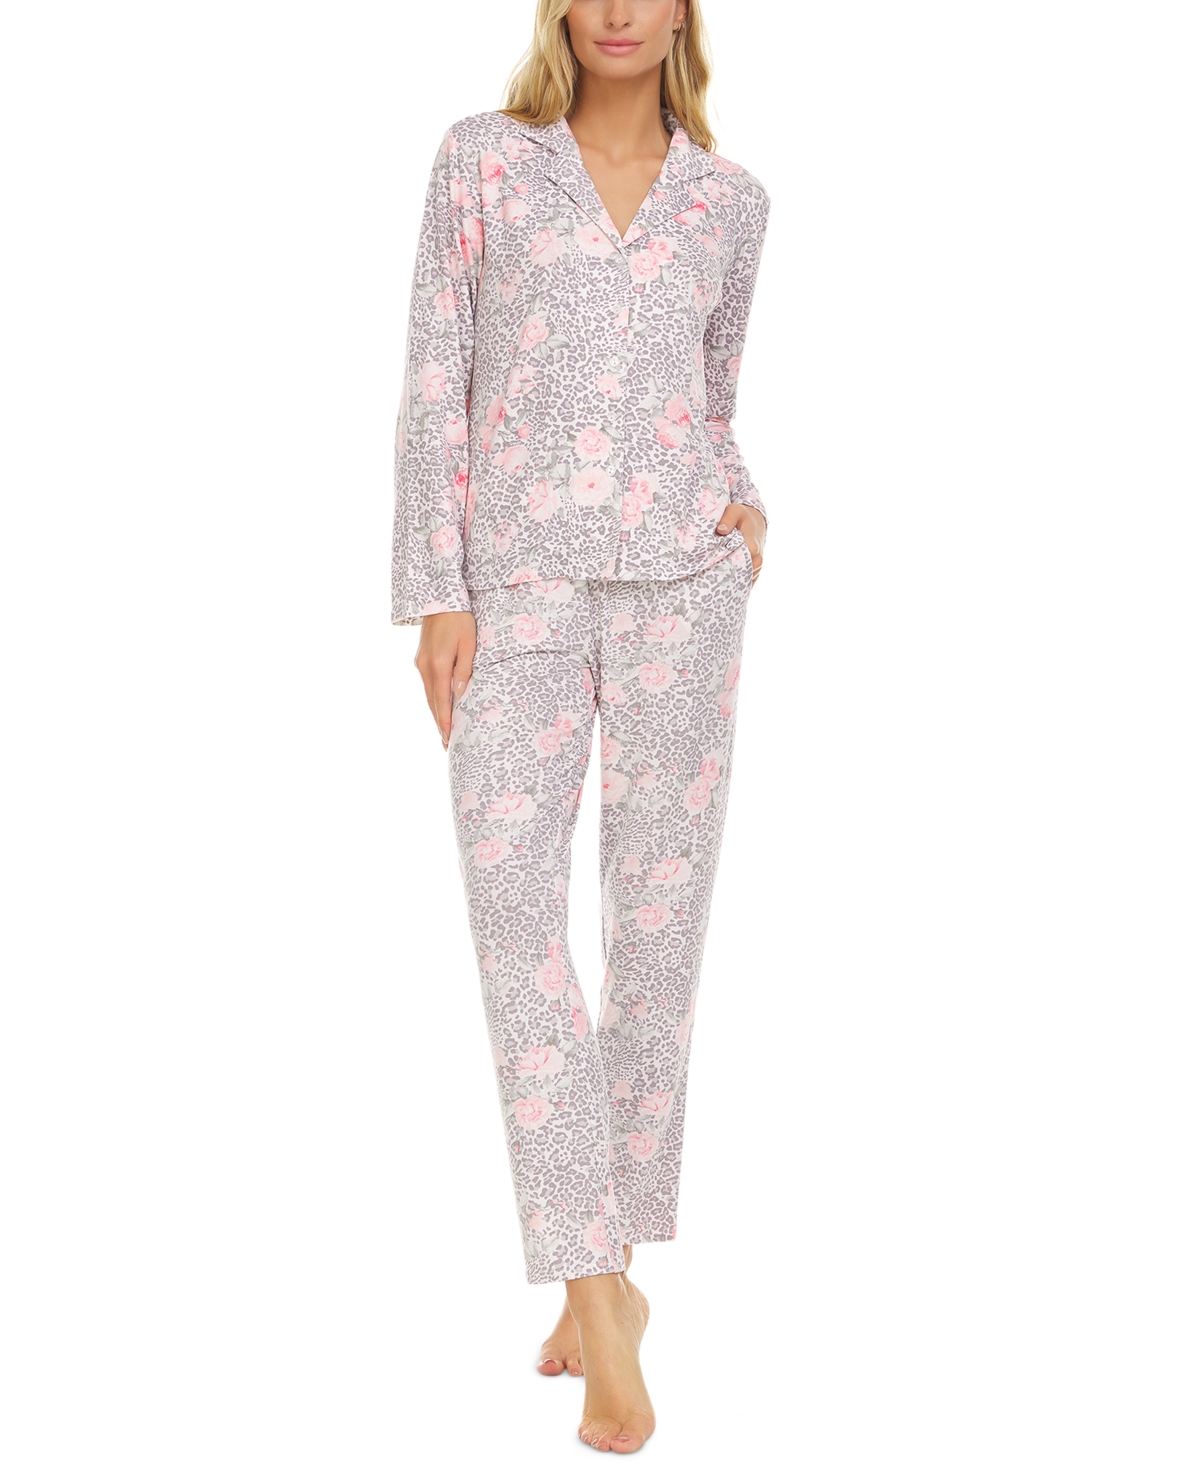 Flora by Flora Nikrooz Tammy Notch Collar Top & Pants Pajama Set